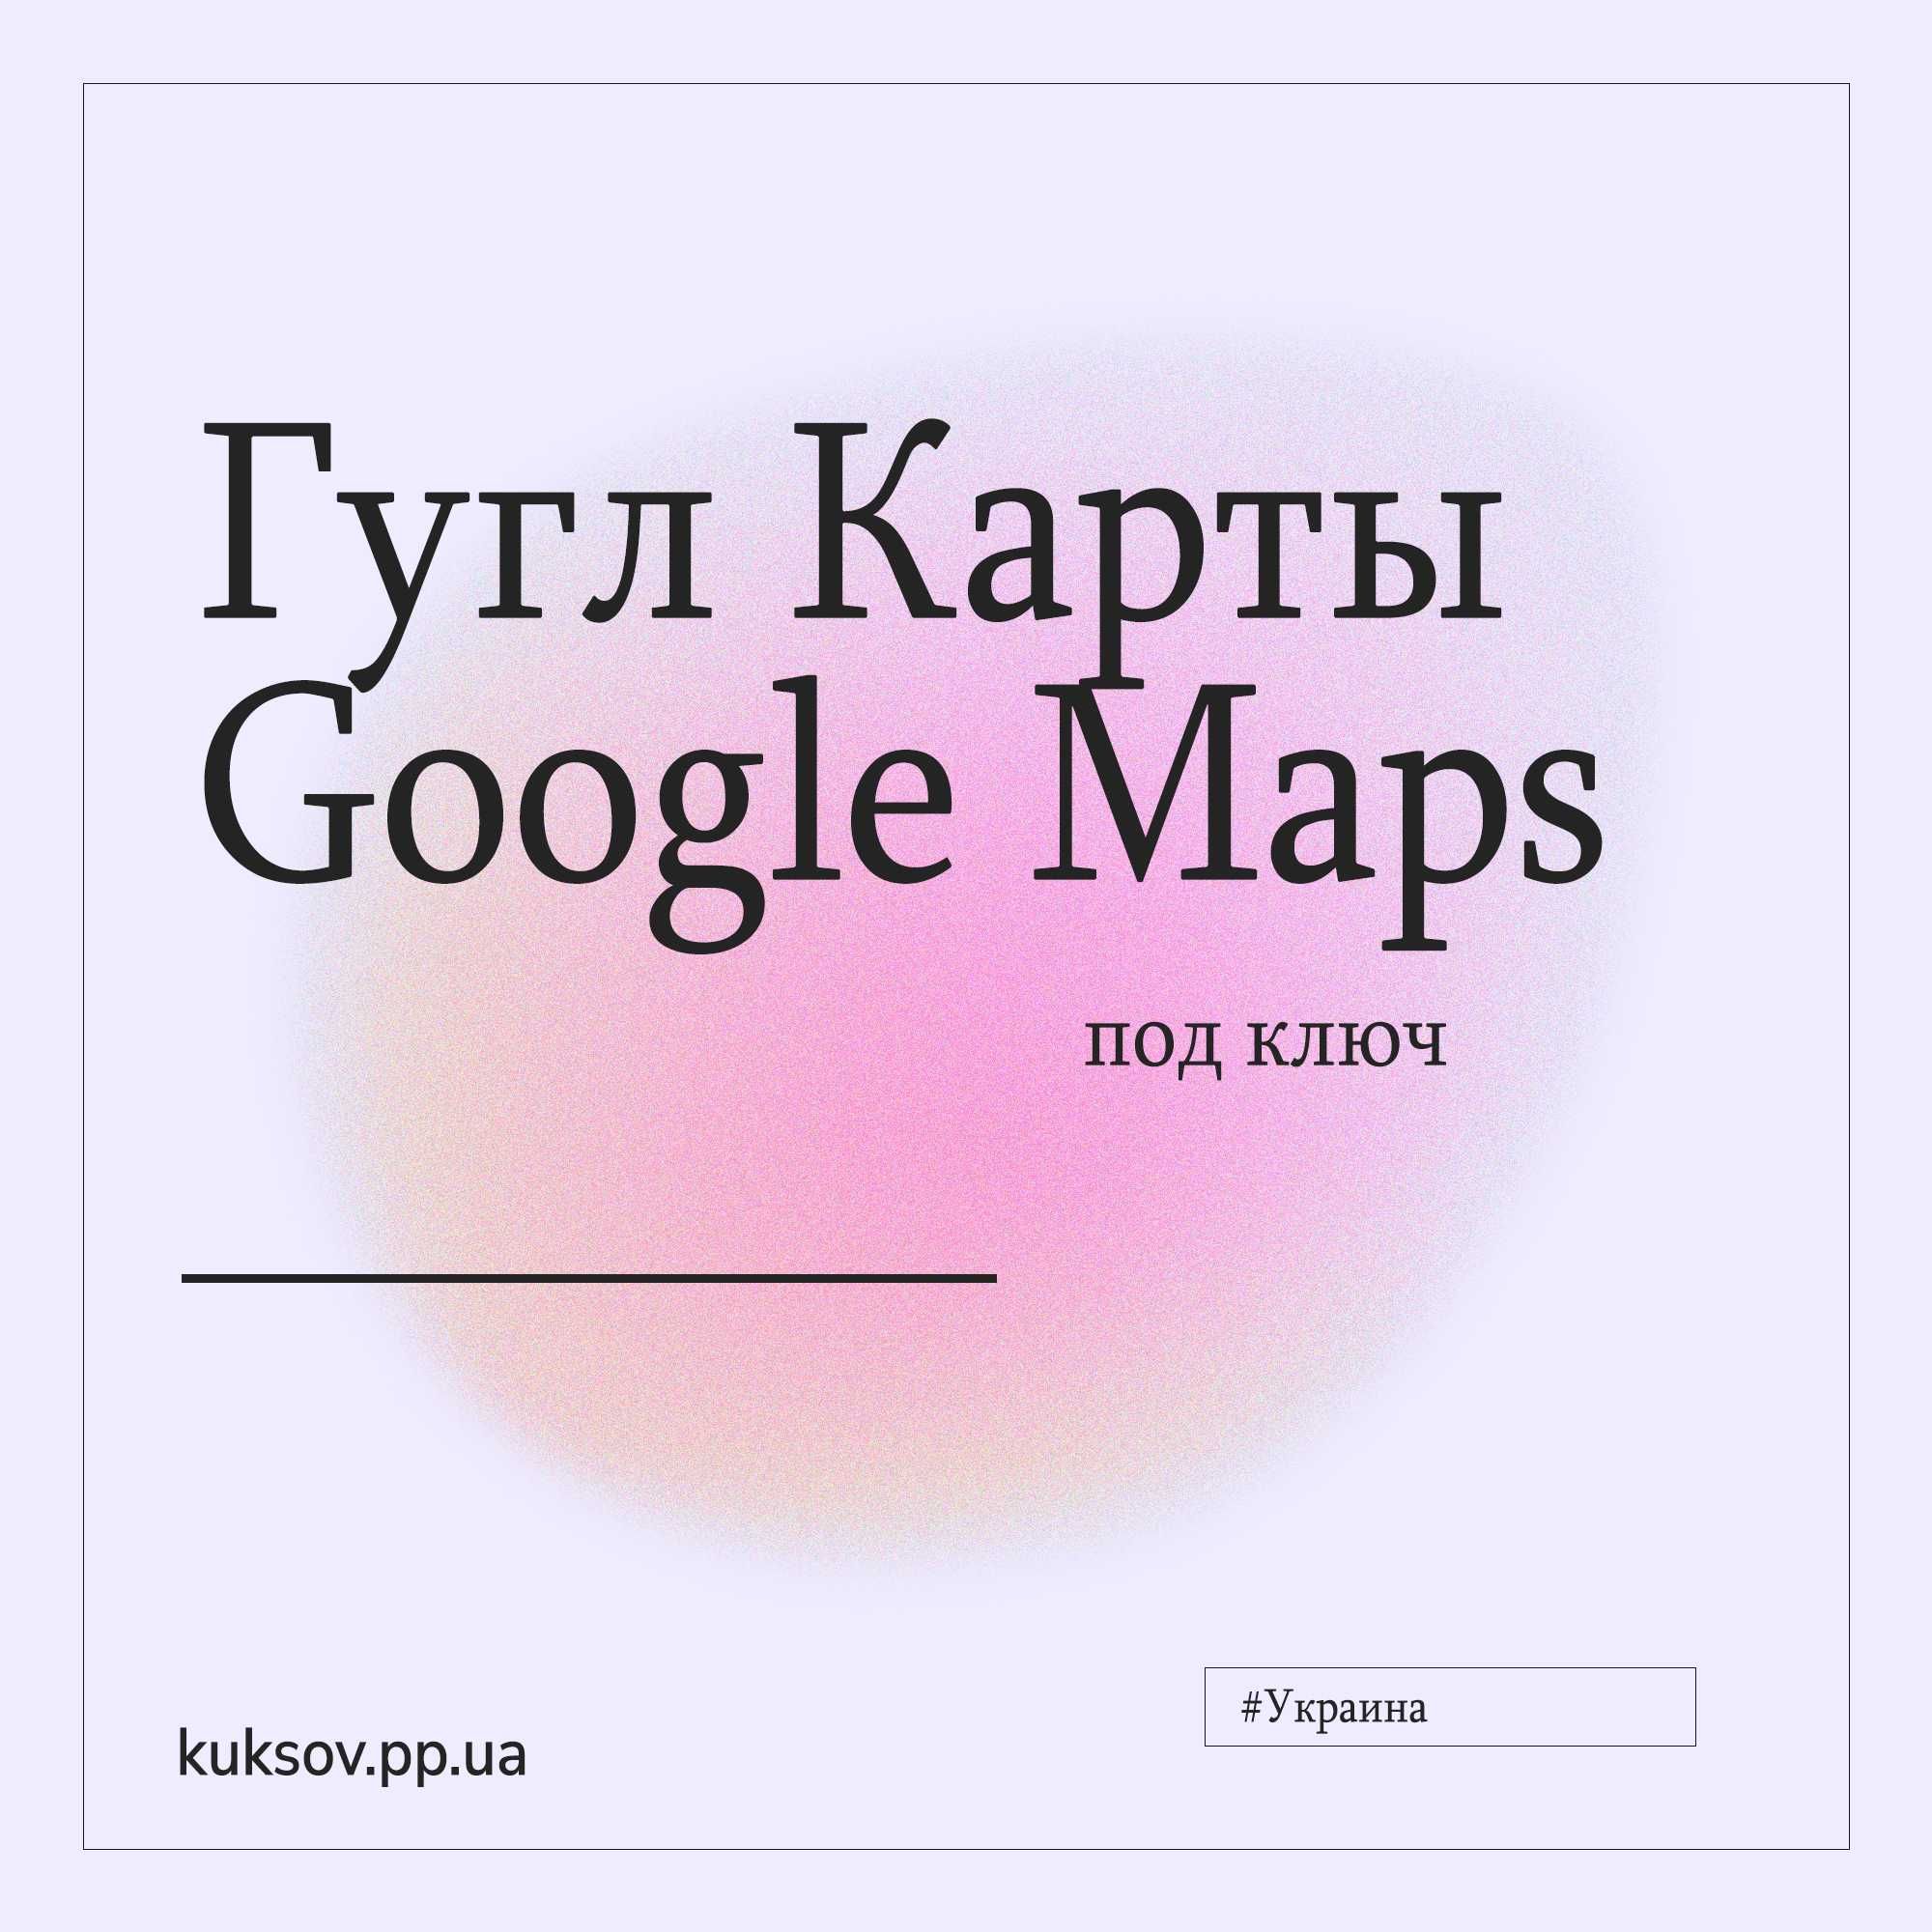 Бесплатно | Гугл Карты | Консультация | Бизнес в Интернете